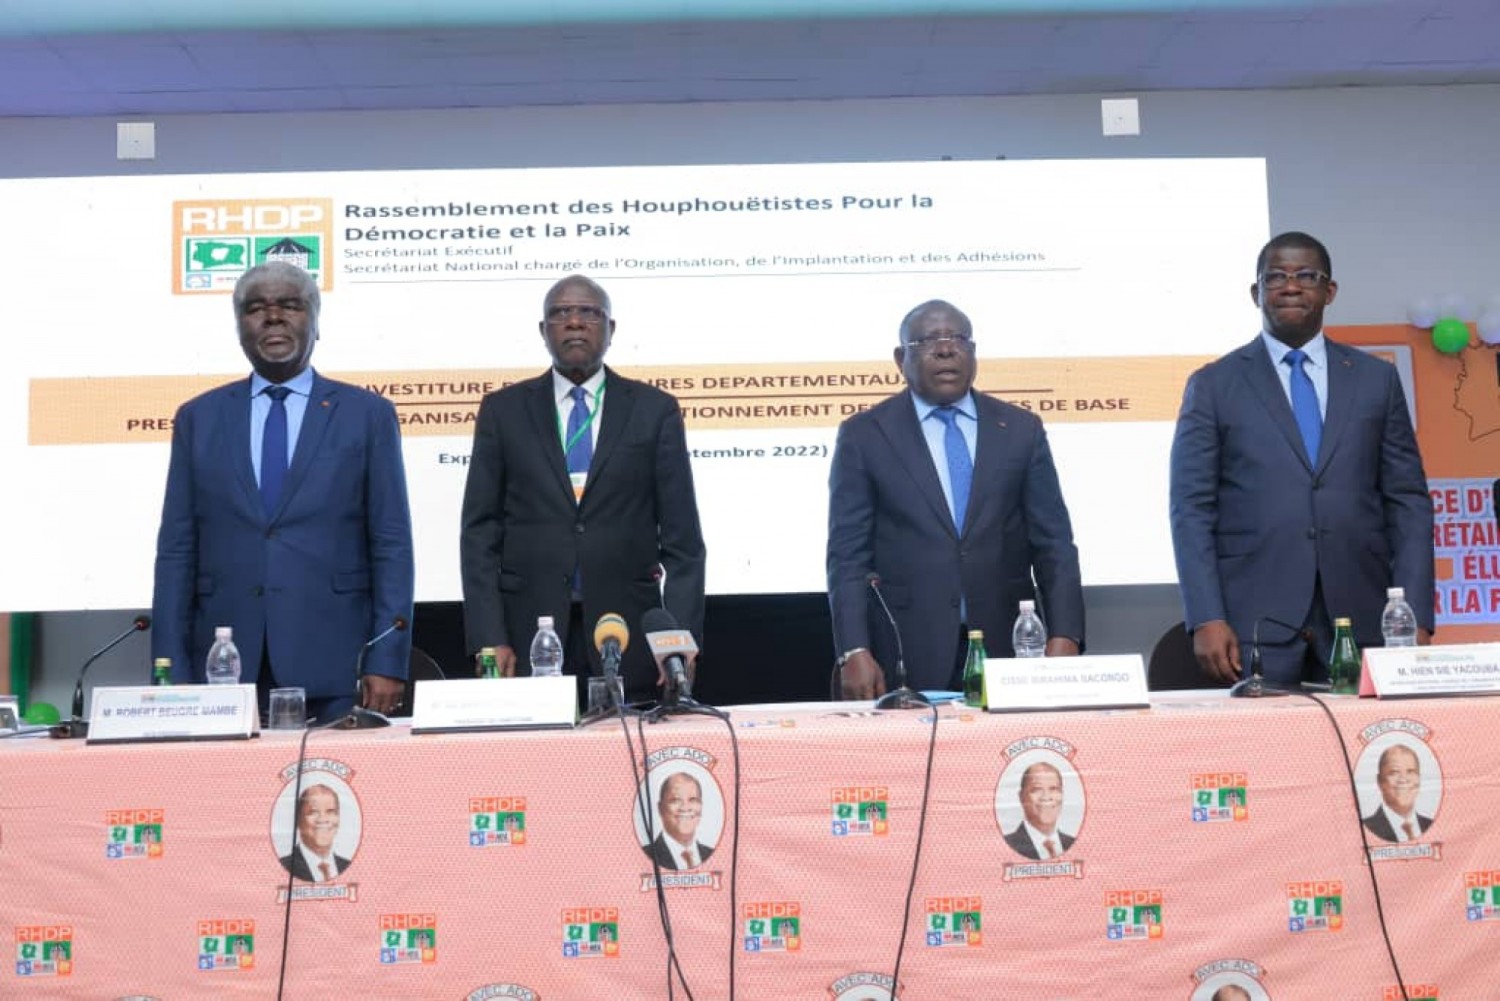 Côte d'Ivoire:    En prélude à la réunion du Conseil politique, Gilbert Kafana Koné reçoit les Secrétaires Départementaux nouvellement élus et les exhorte au travail